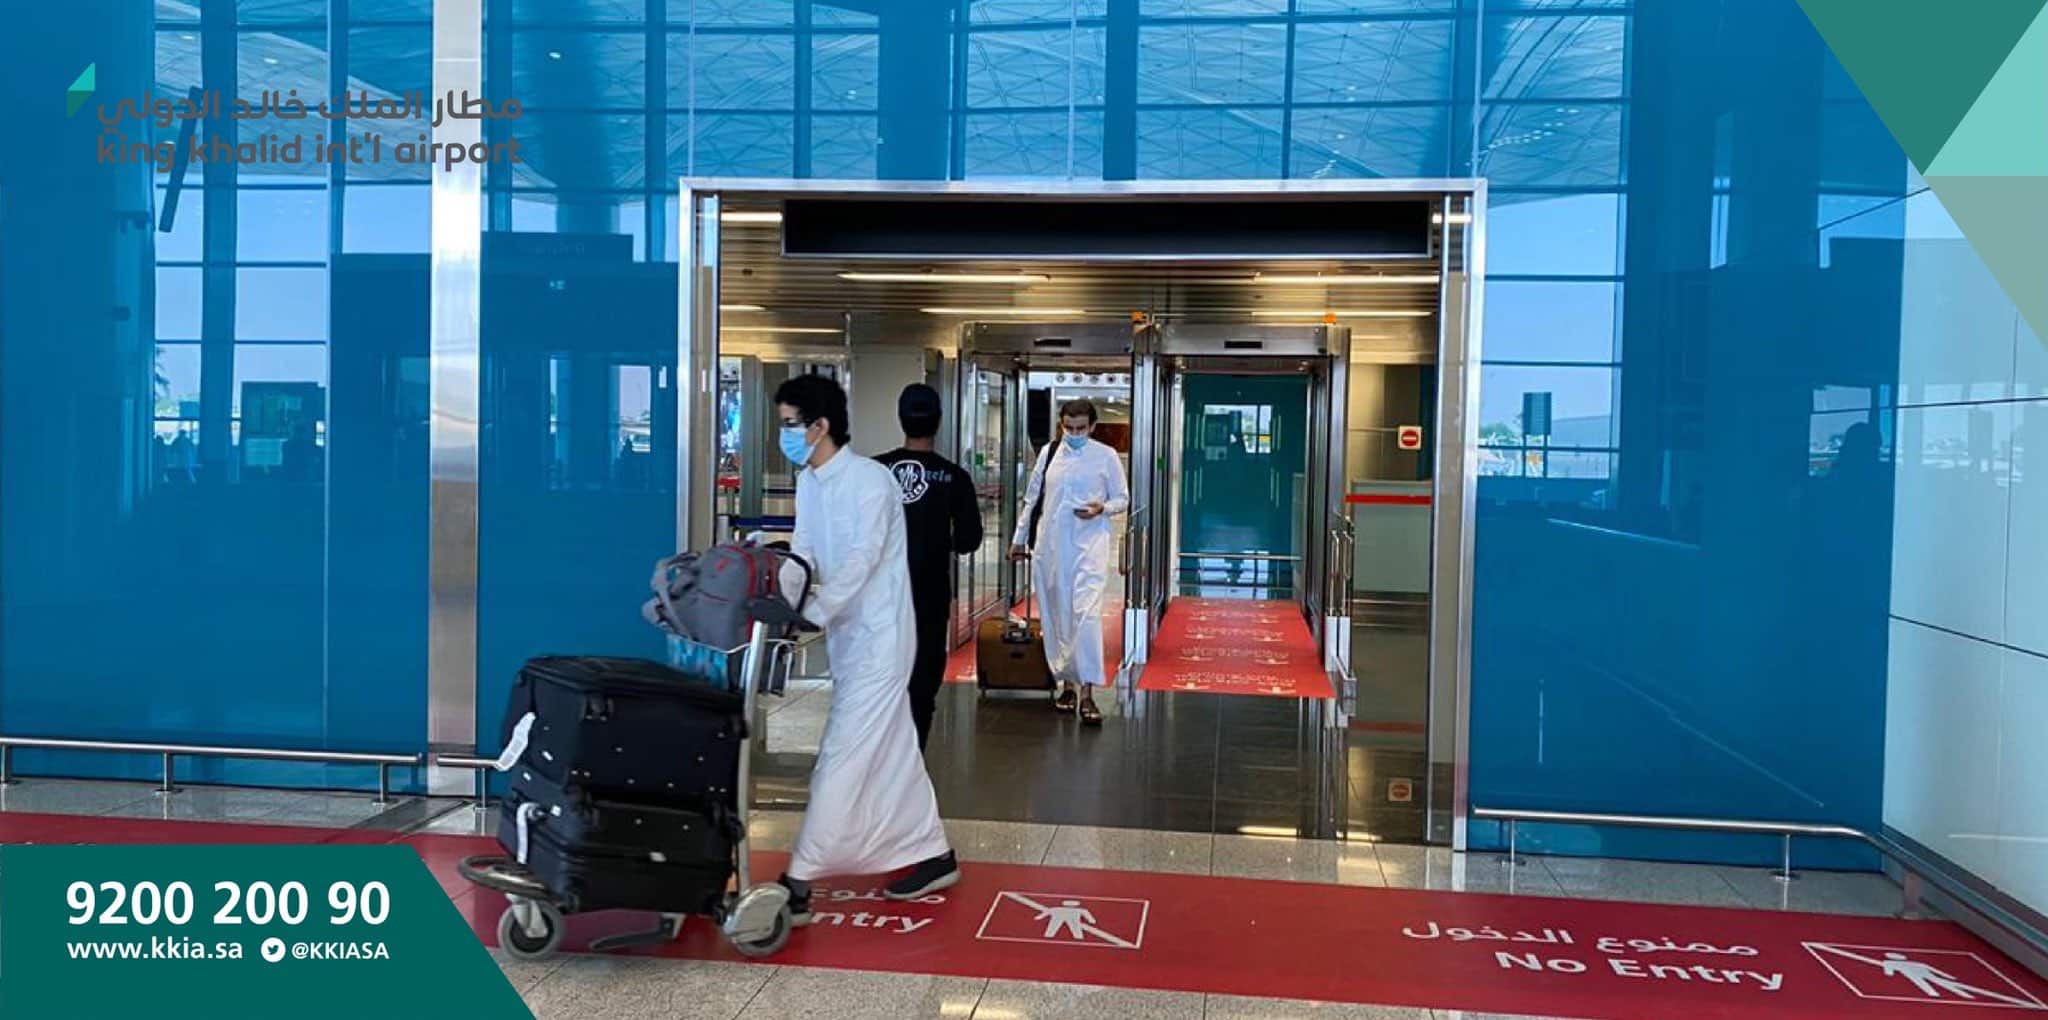 وصول أول رحلة إلى مطار الملك خالد الدولي قادمة من جدة